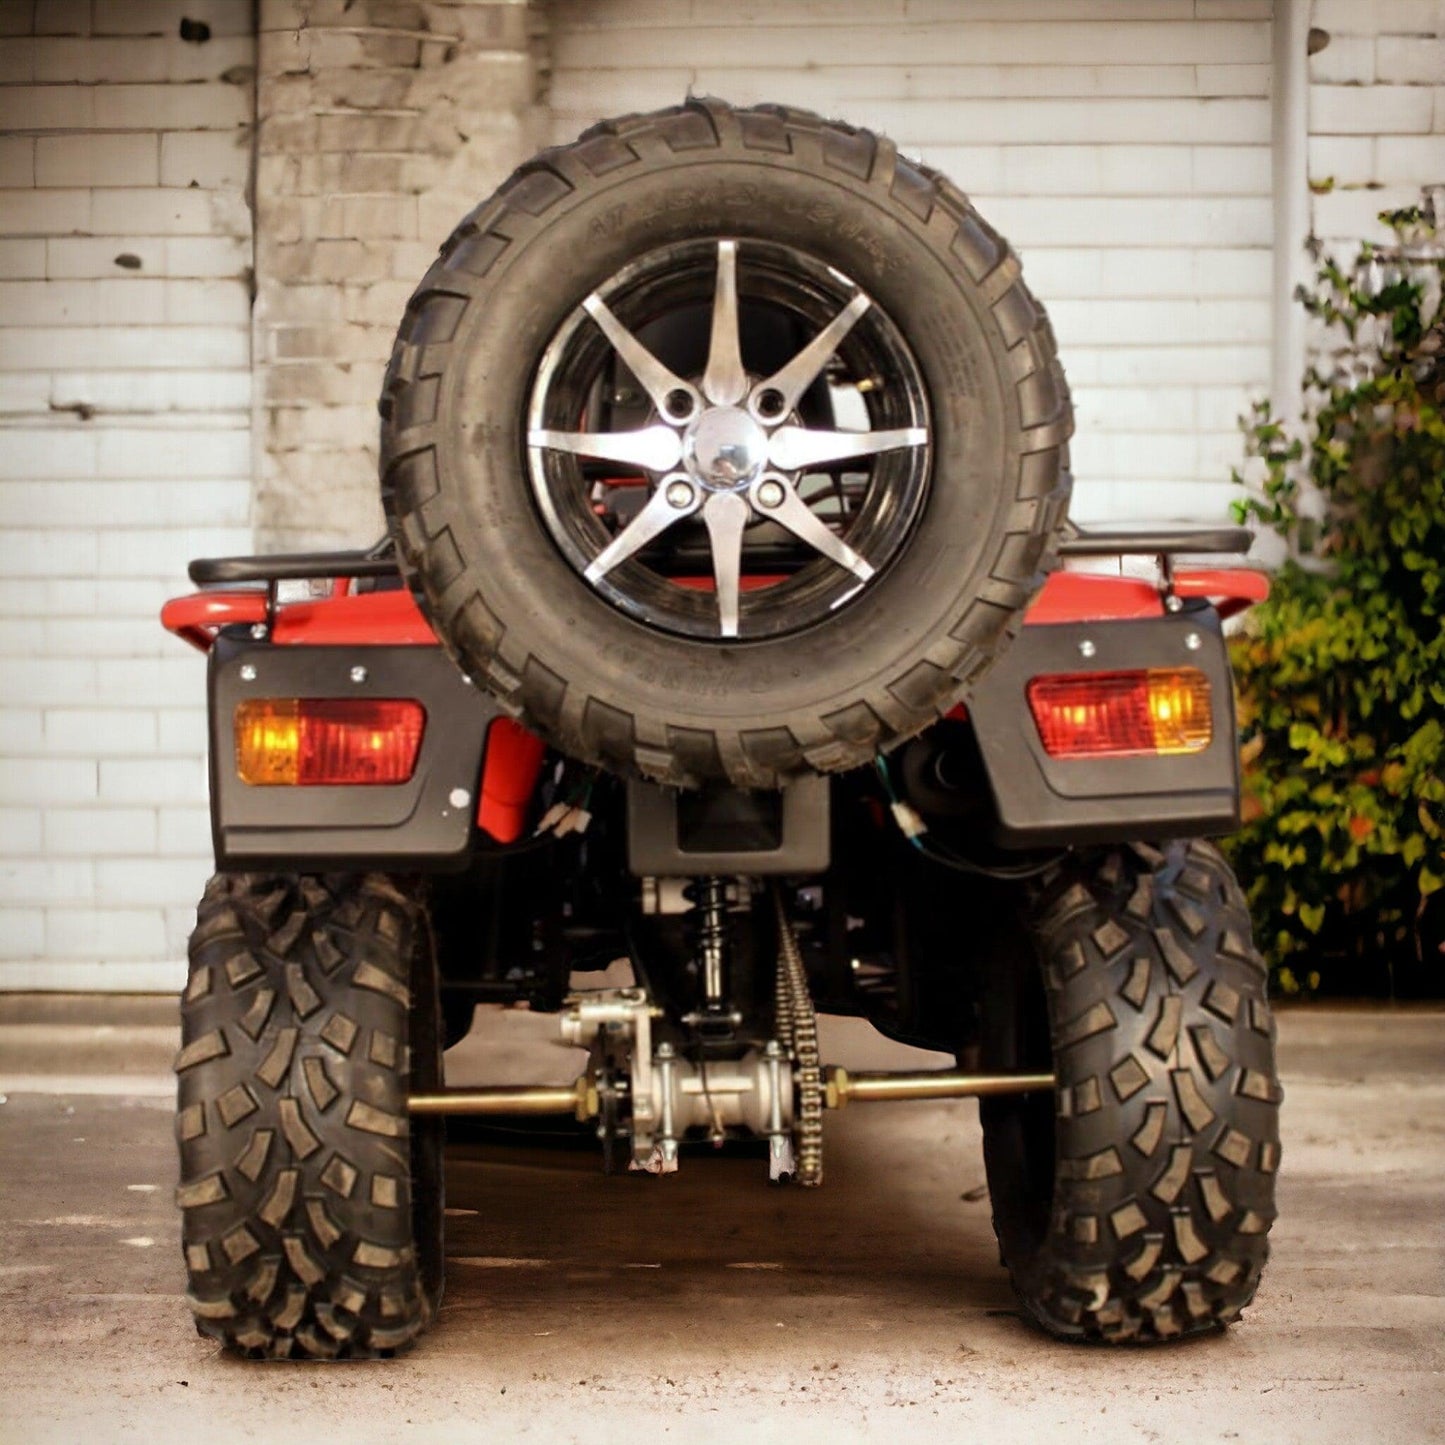 PATOYS | Super Hunk Atv 250cc (Red) - PATOYS